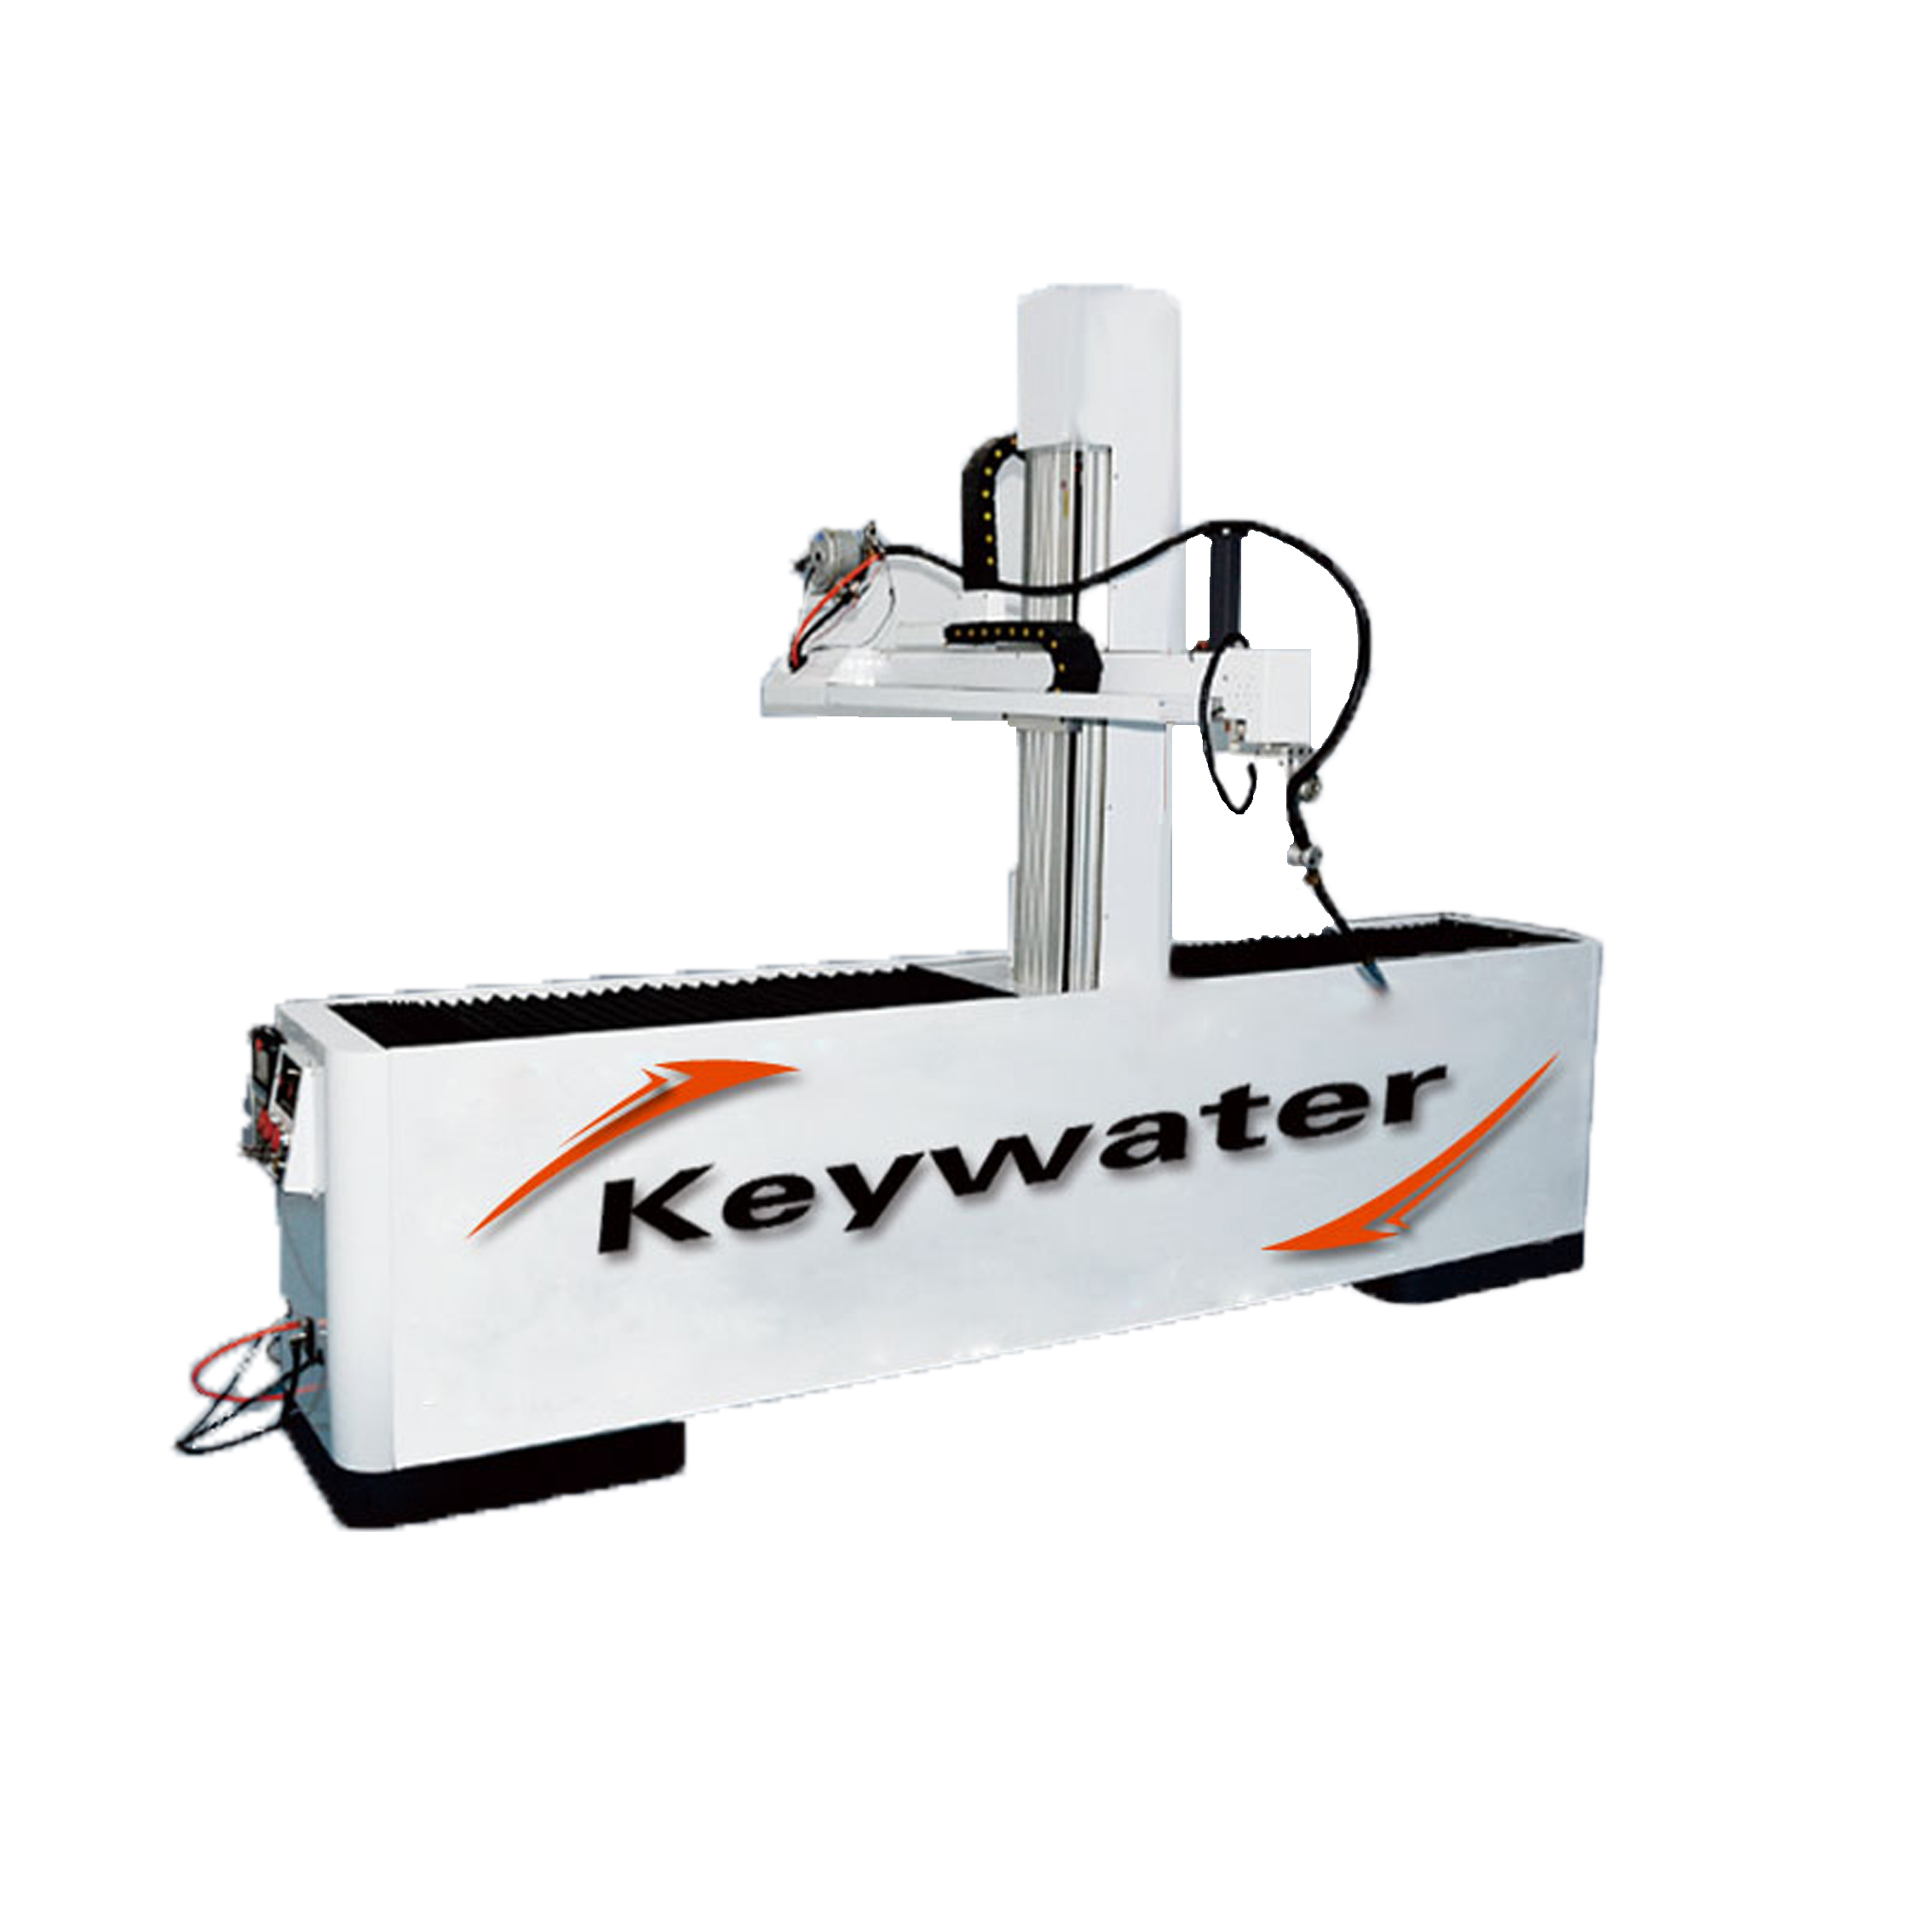 凯沃智造	自动化焊接	焊接机器人焊接	自动化设备	焊接自动化设备